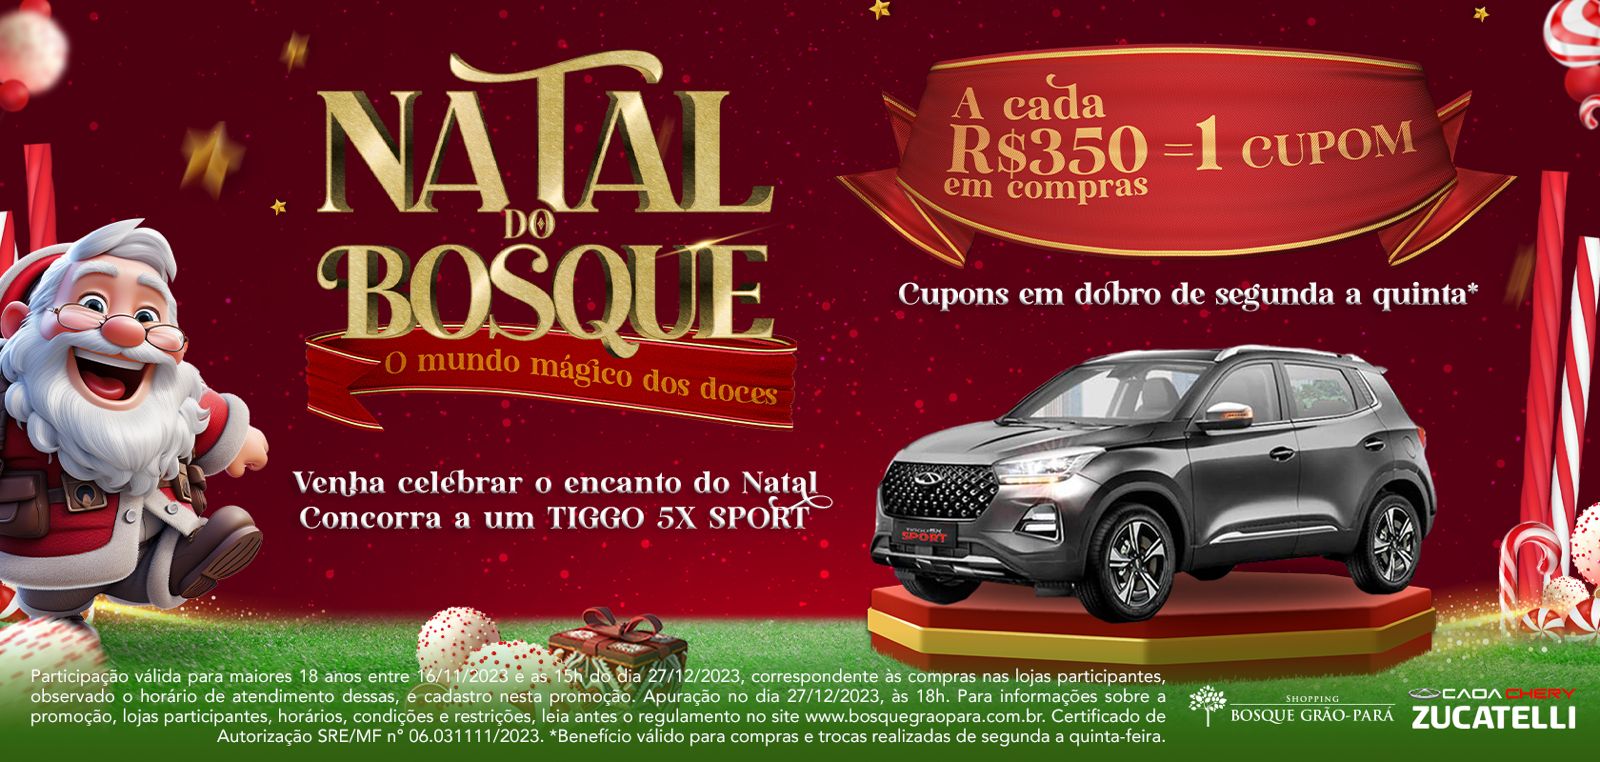 Freire Mello inaugura stand de vendas no Shopping Bosque Grão-Pará